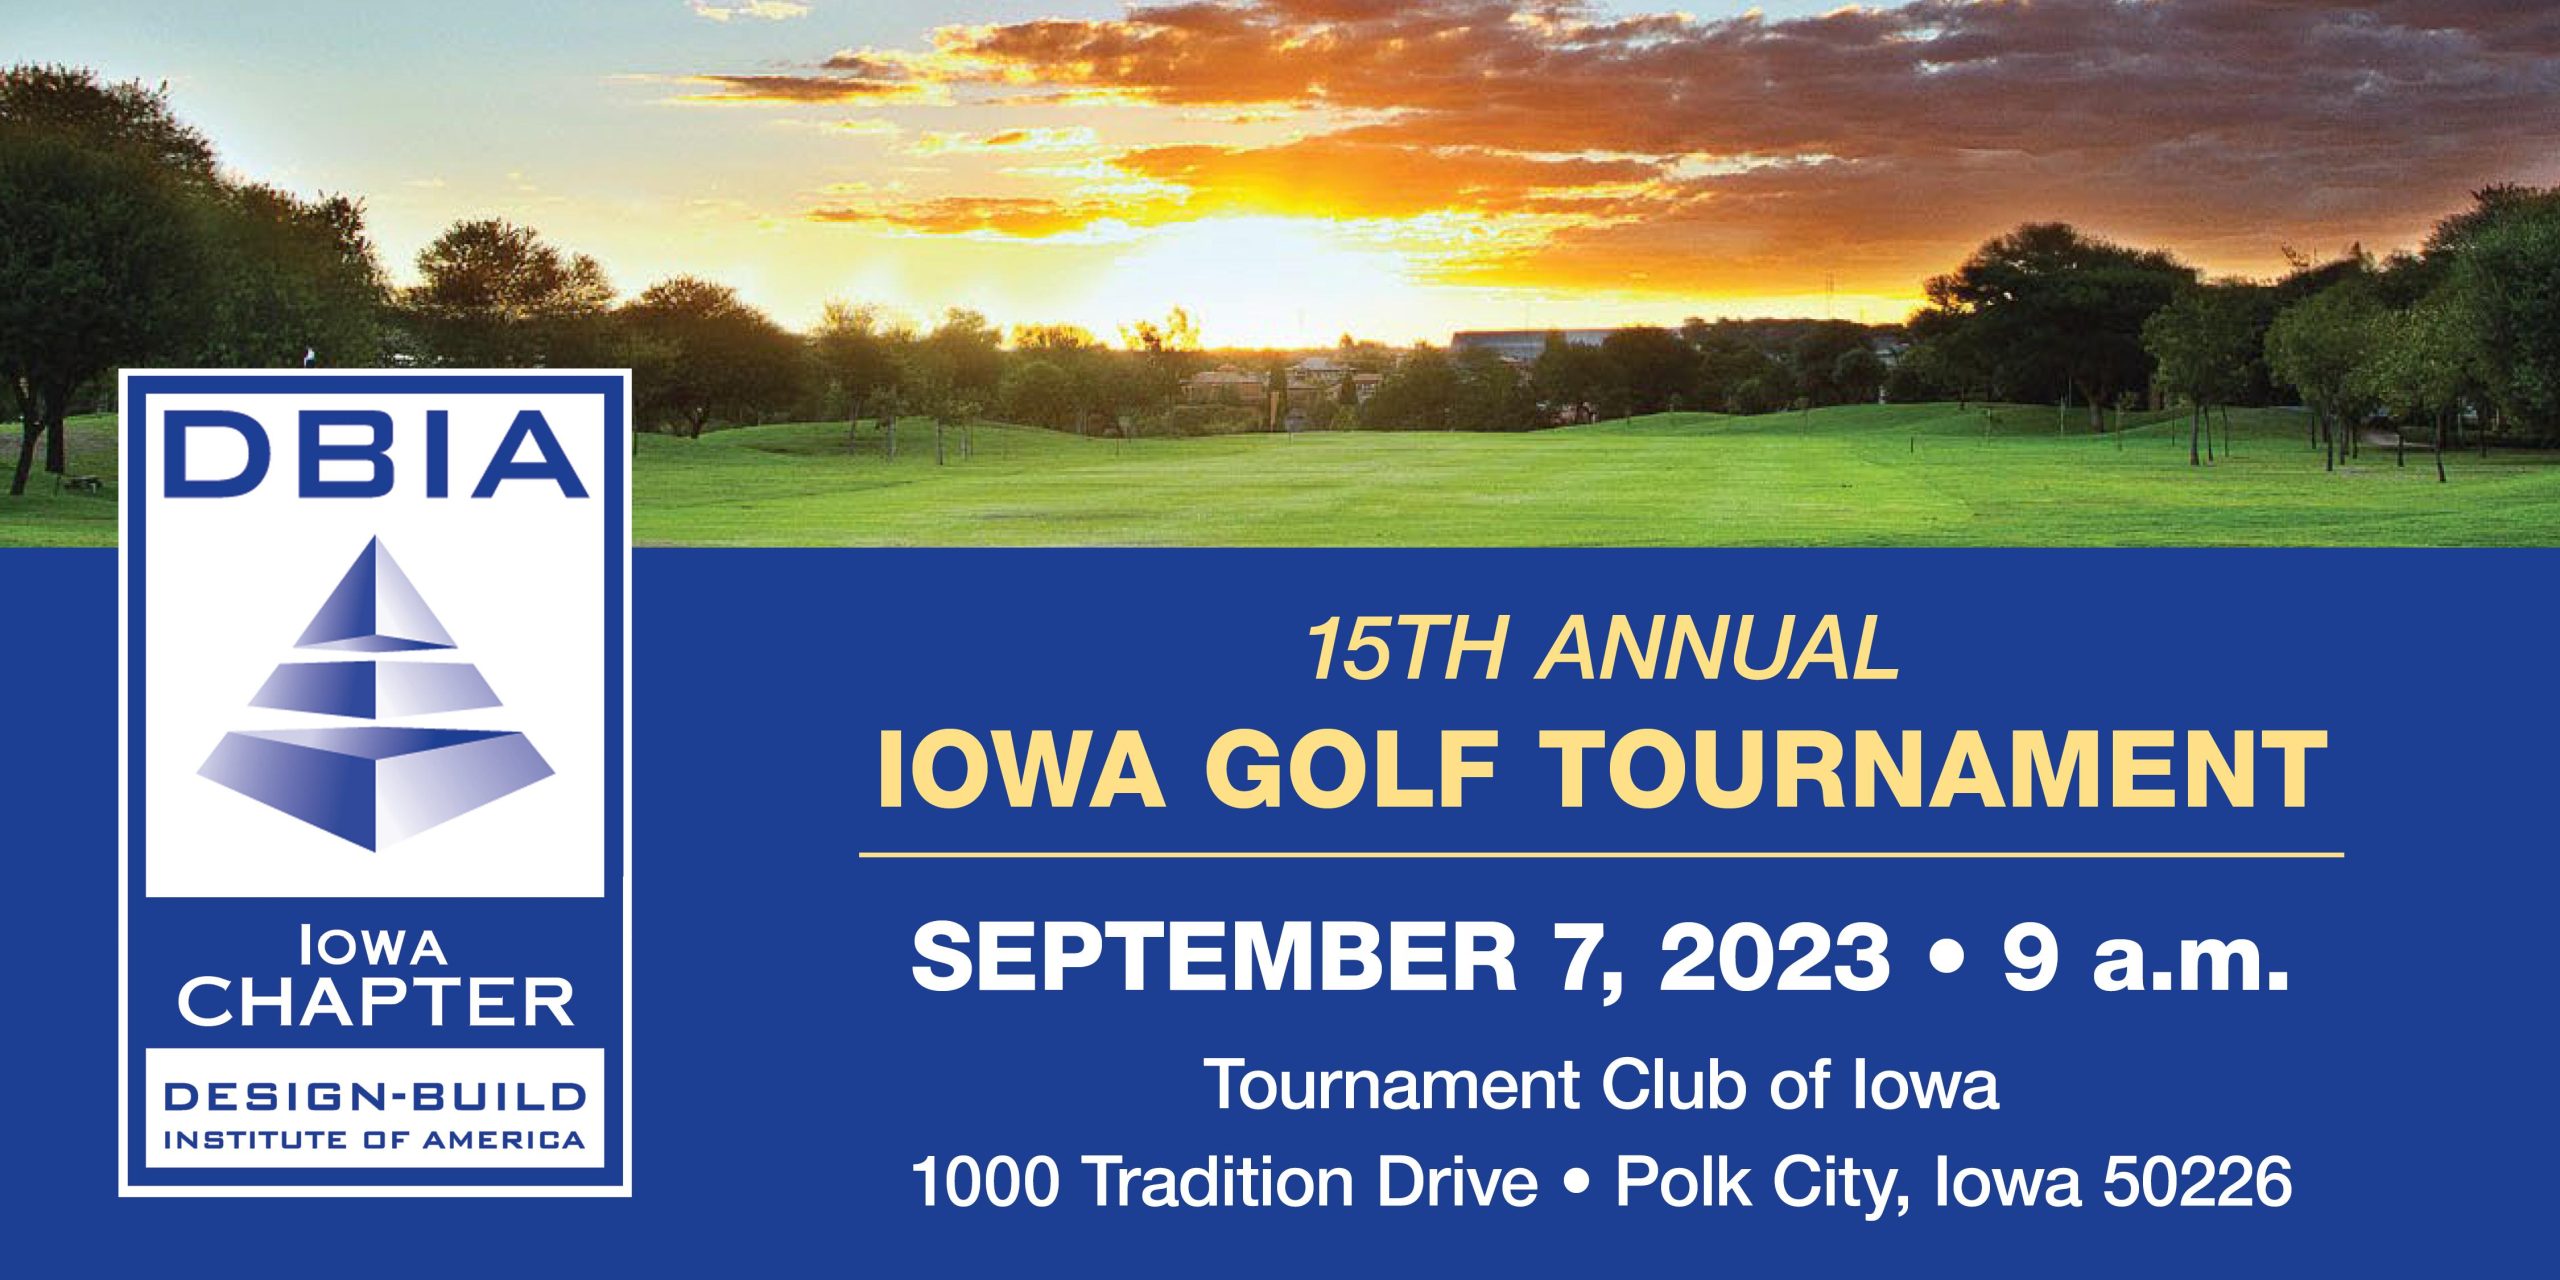 DBIA-Iowa | Golf Tournament